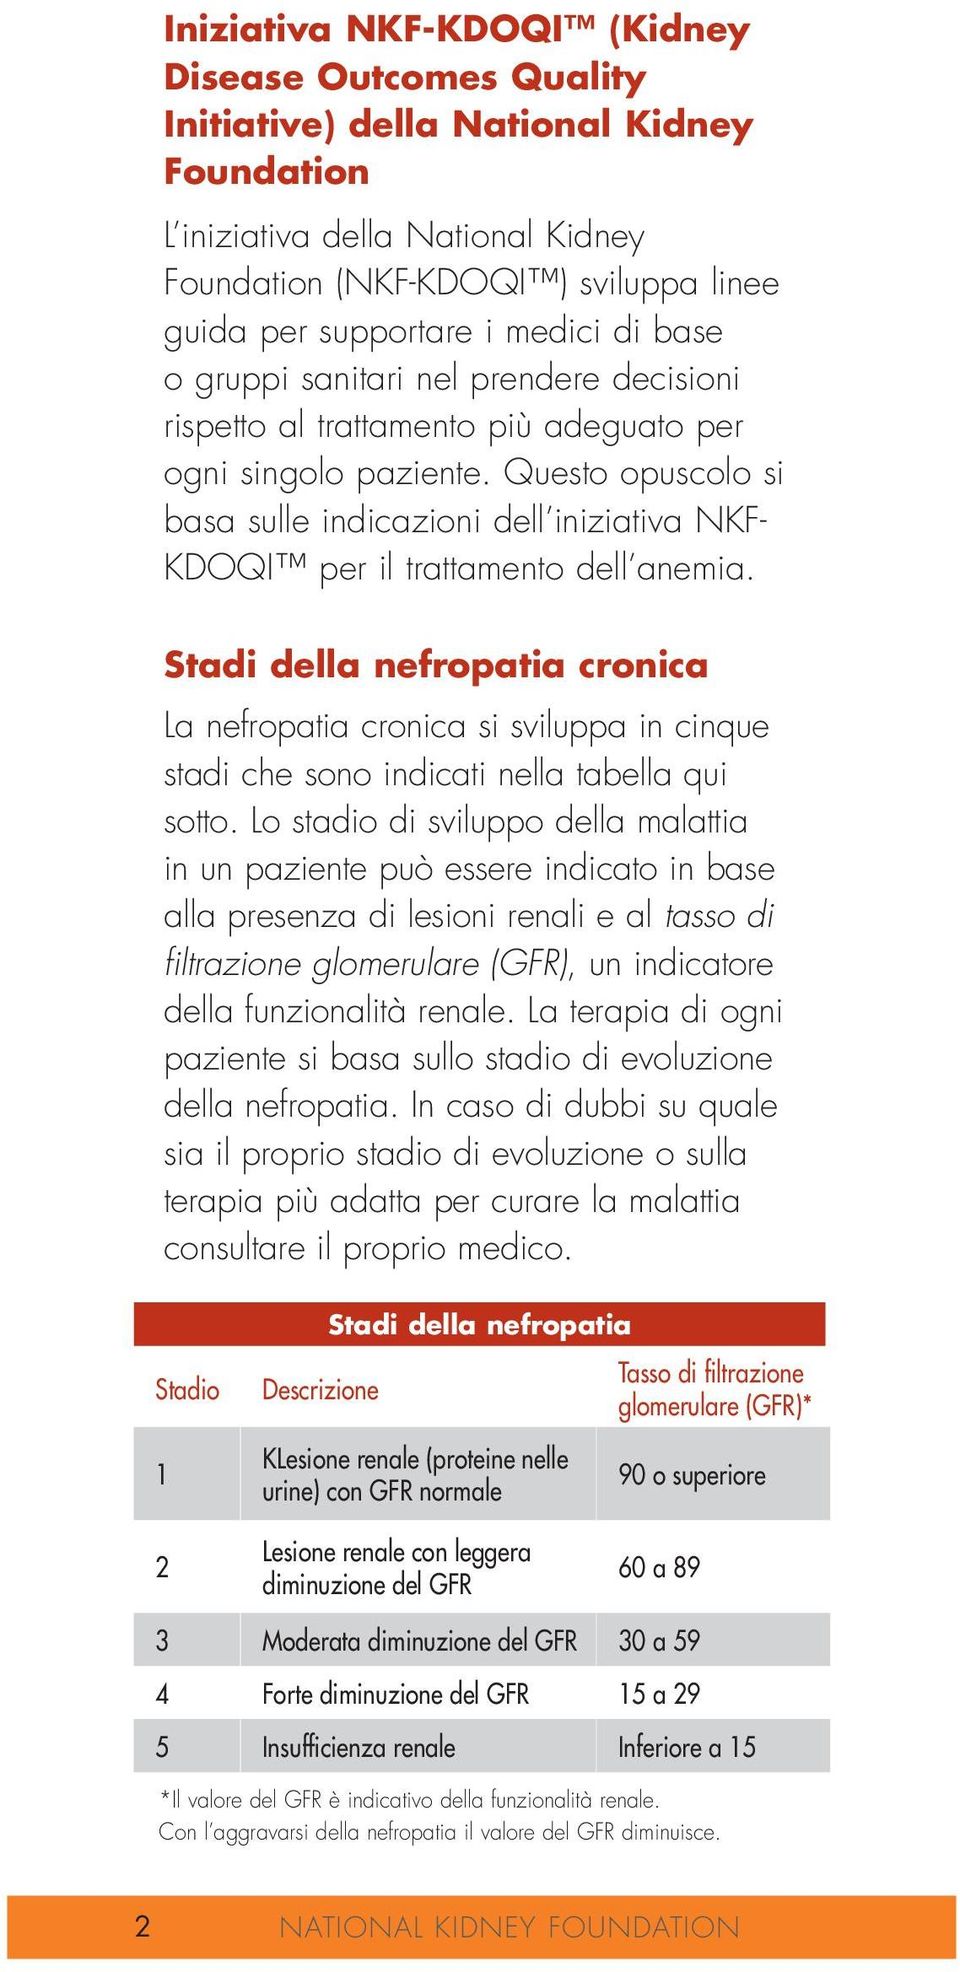 Questo opuscolo si basa sulle indicazioni dell iniziativa NKF- KDOQI per il trattamento dell anemia.